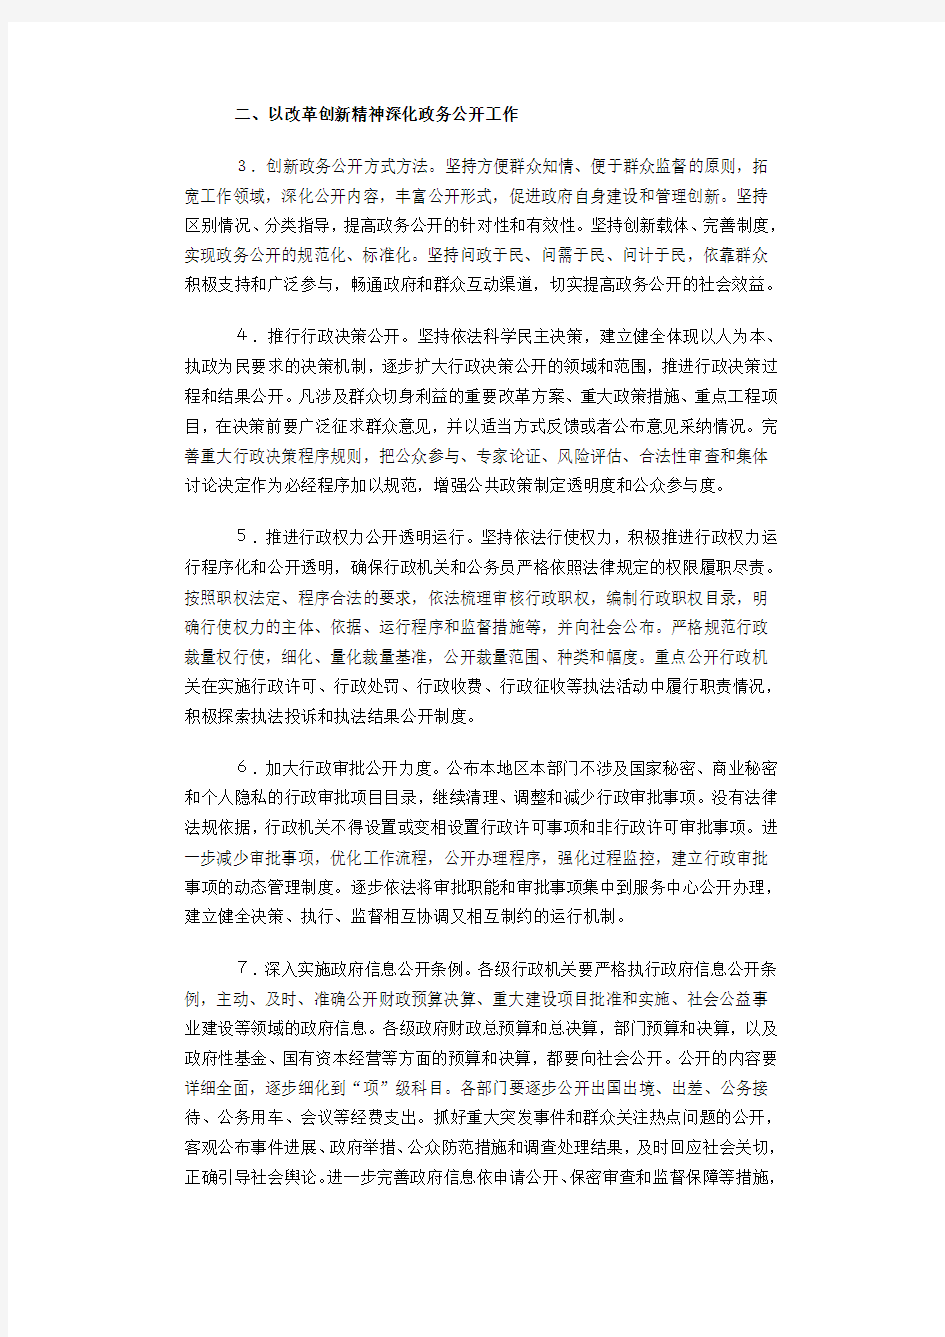 中办国办印发关于深化政务公开加强政务服务的意见